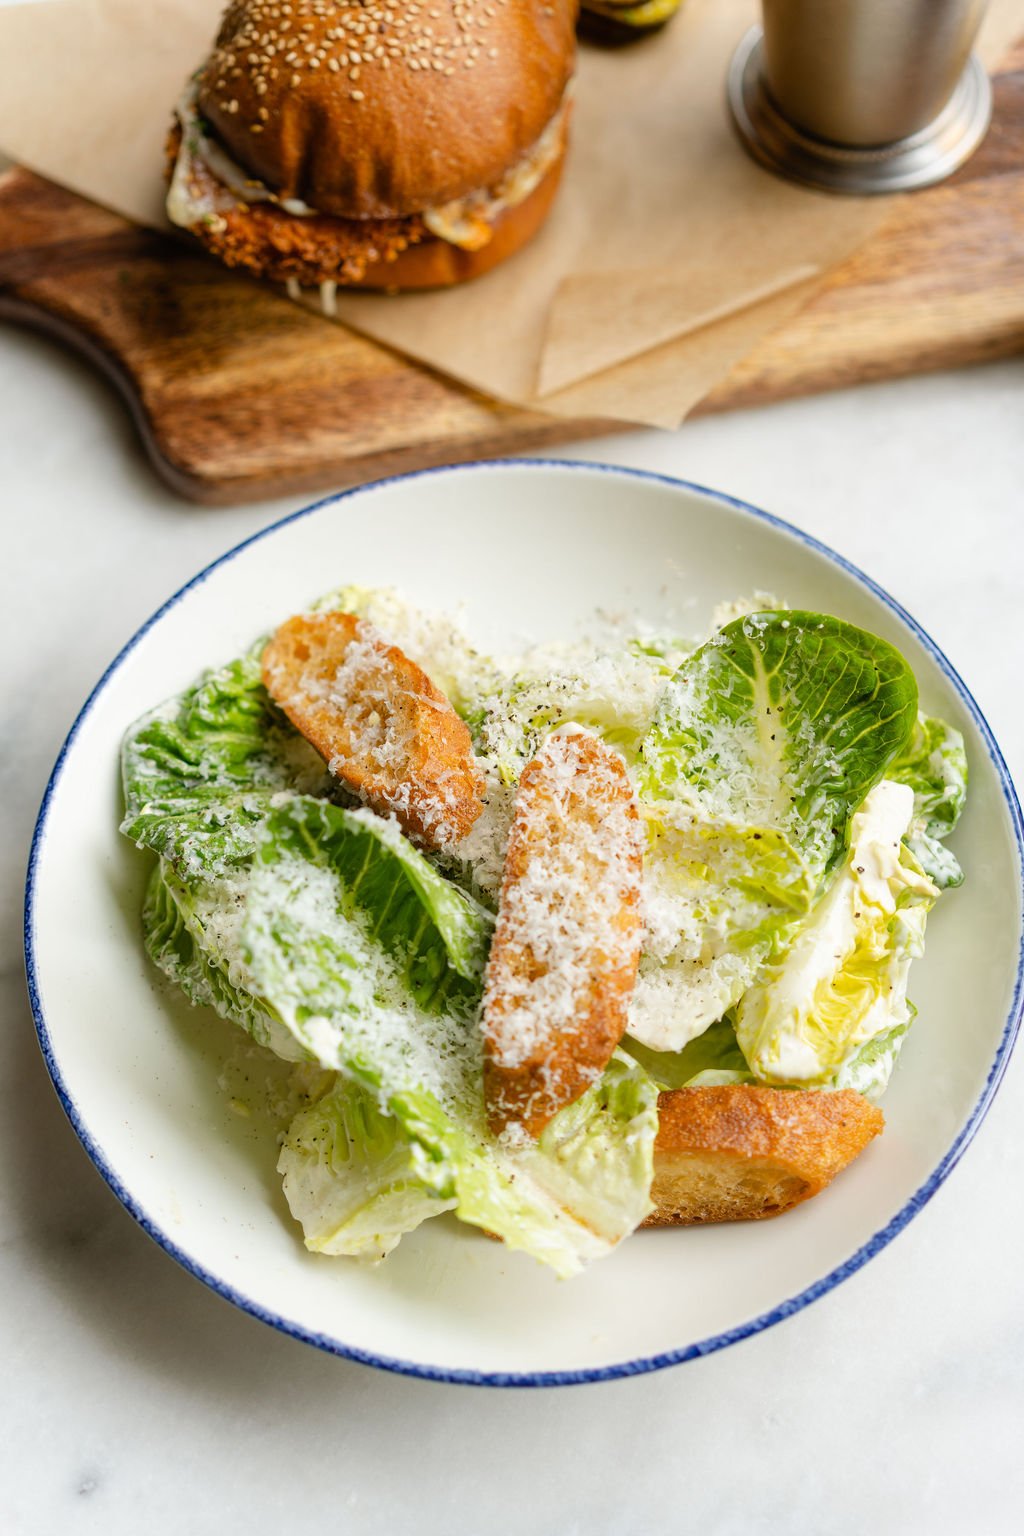 Image of Caesar Salad and Chicken Sandwhich.jpg